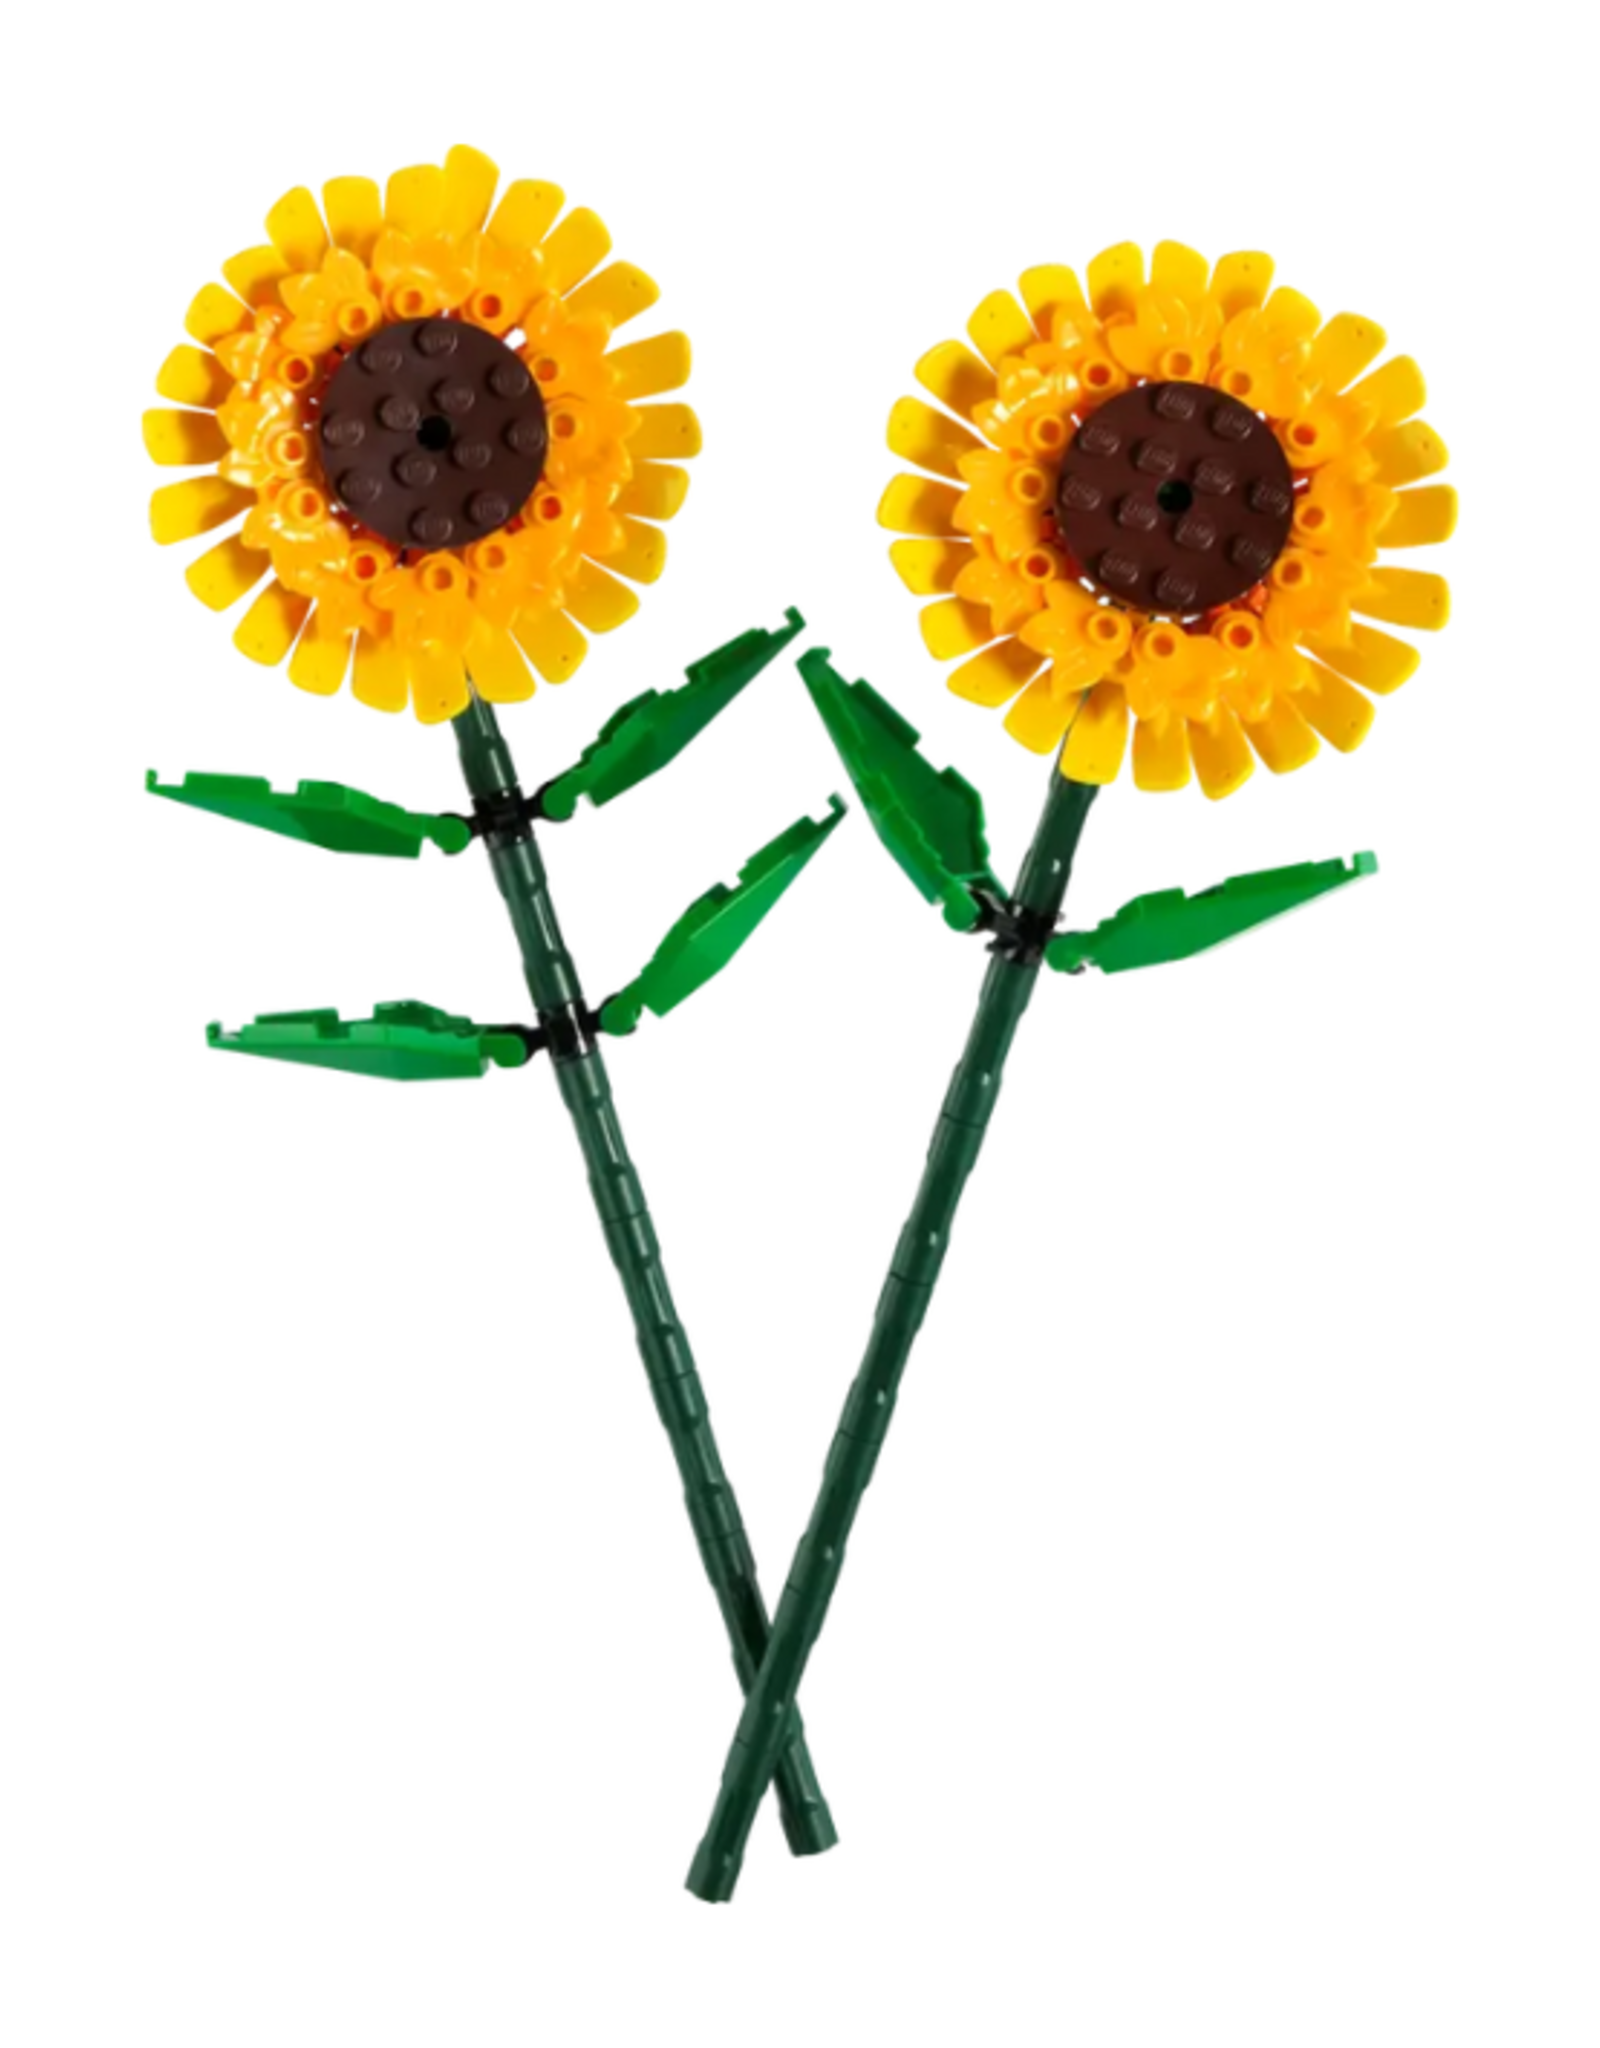 Lego Lego - Botanical Collection - 40524 - Sunflowers